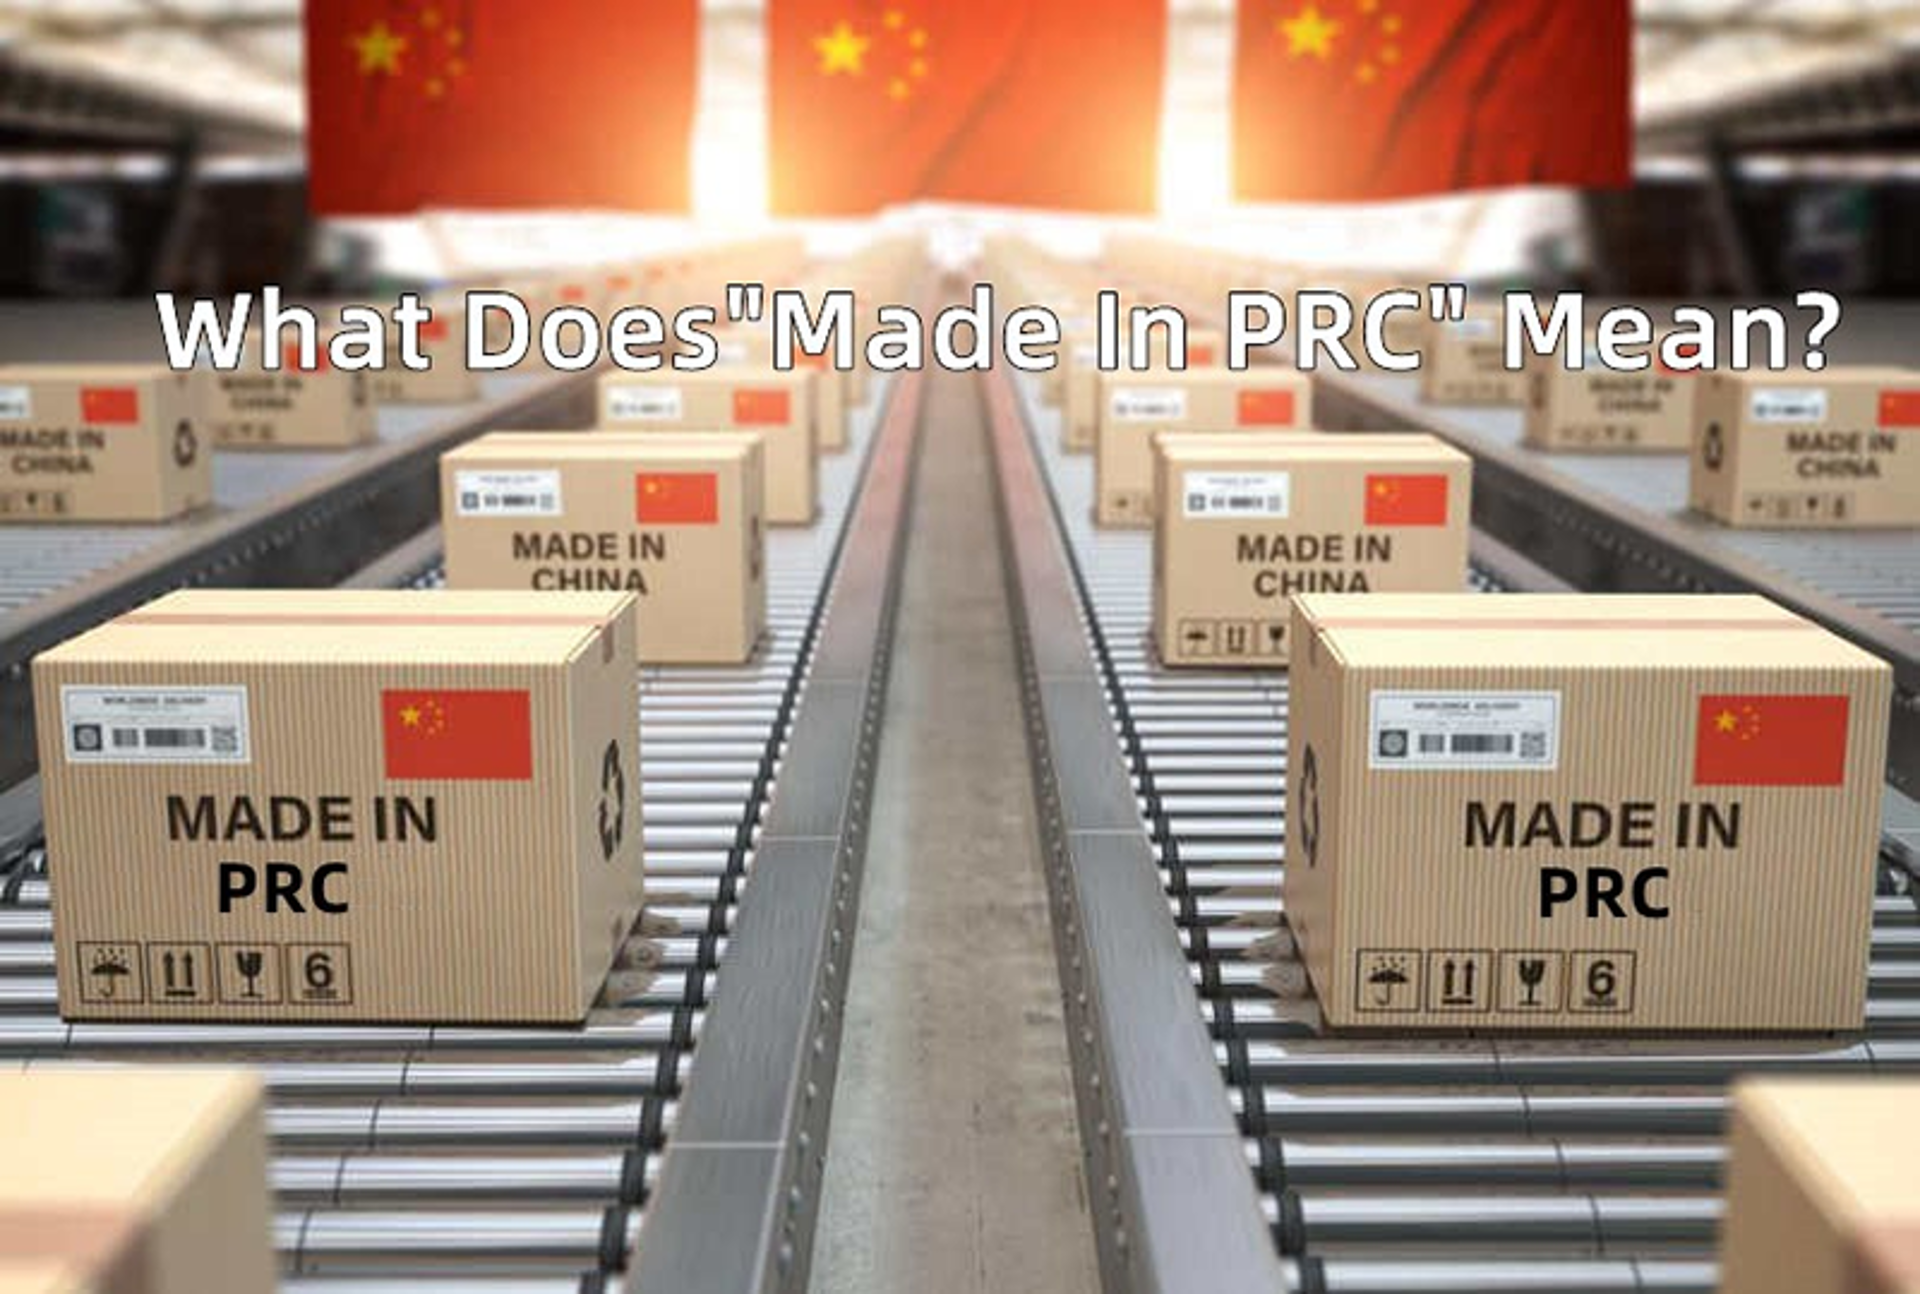 Made in PRC là gì? Nên buôn hàng PRC không? Phương thức mua phù hợp